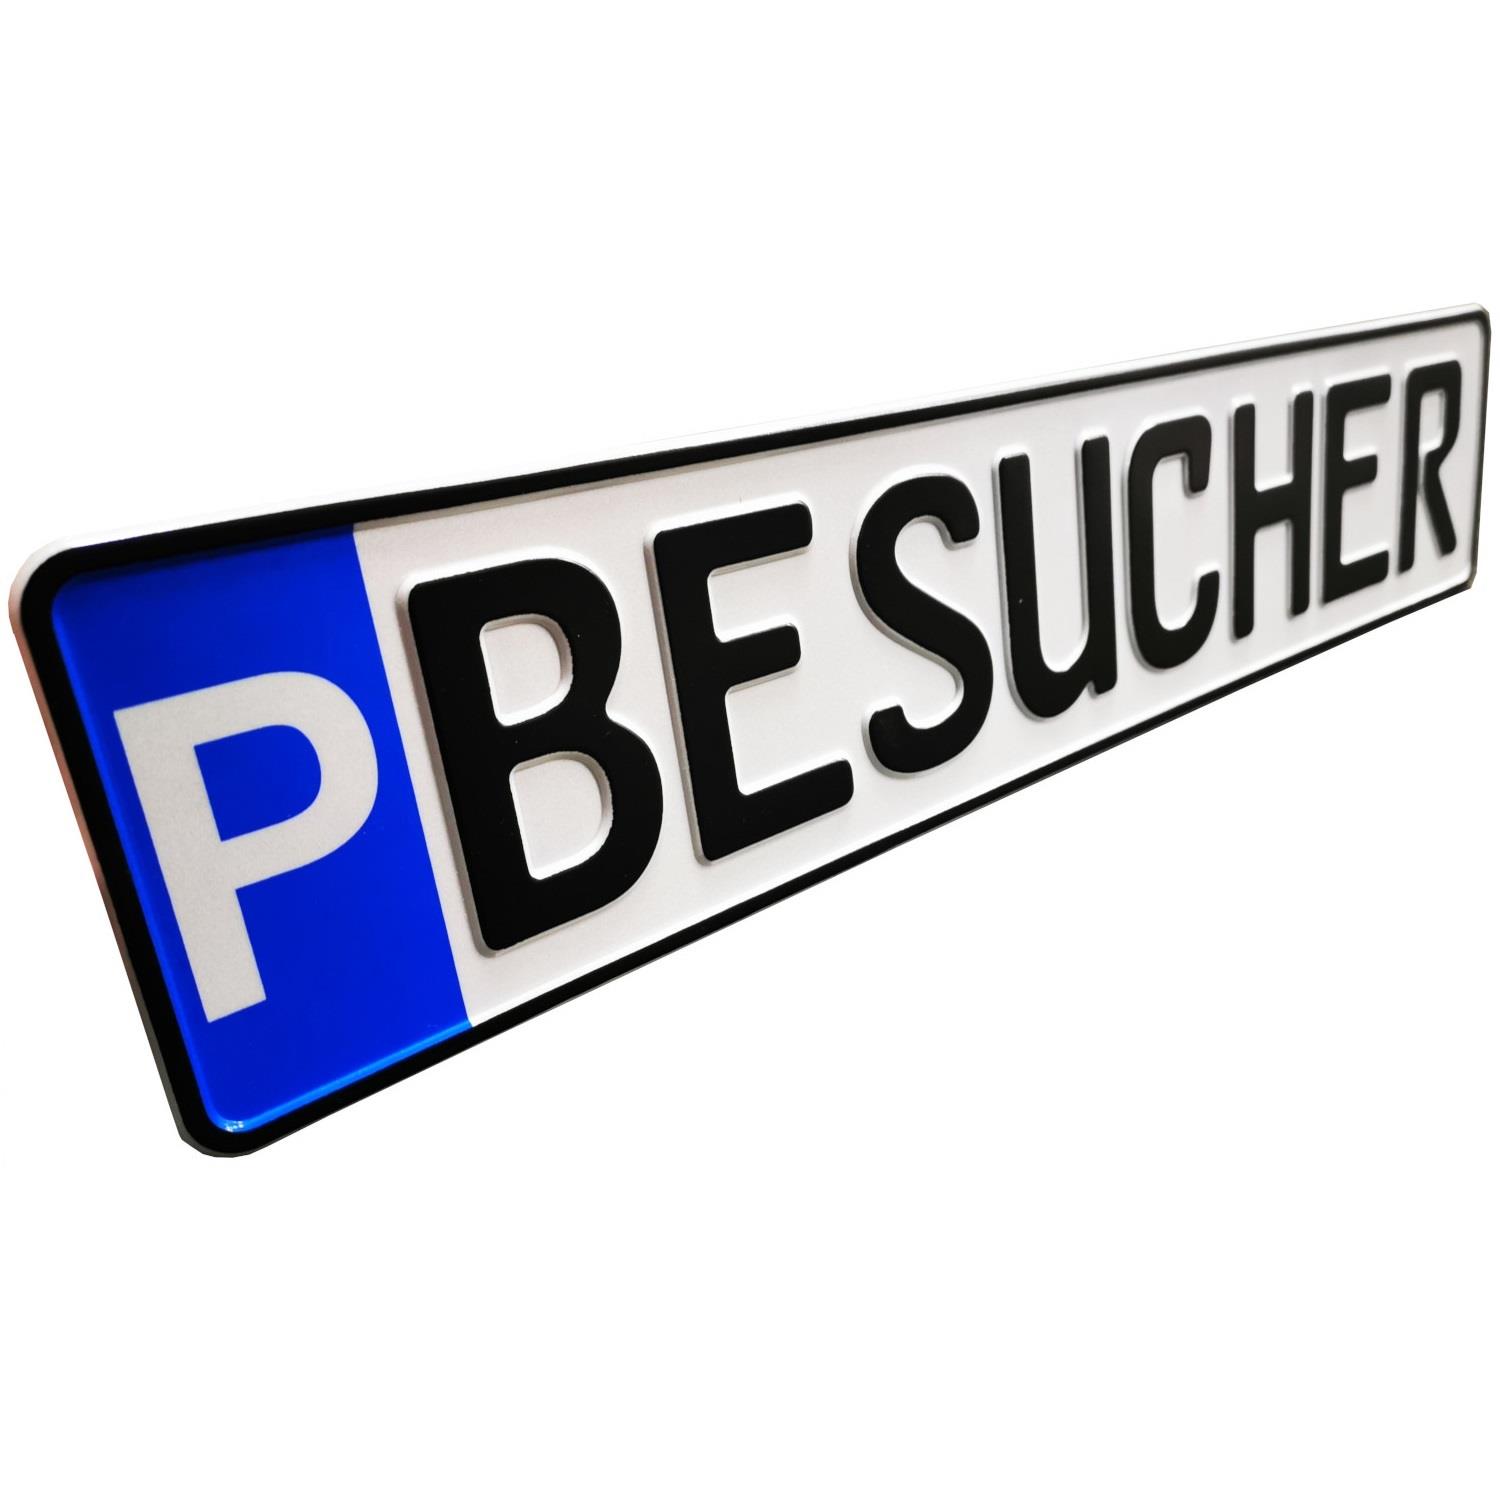 Schild zur Parkplatzkennzeichnung "P-BESUCHER"- KFZ Normgröße, Kleinschrift, geprägt.